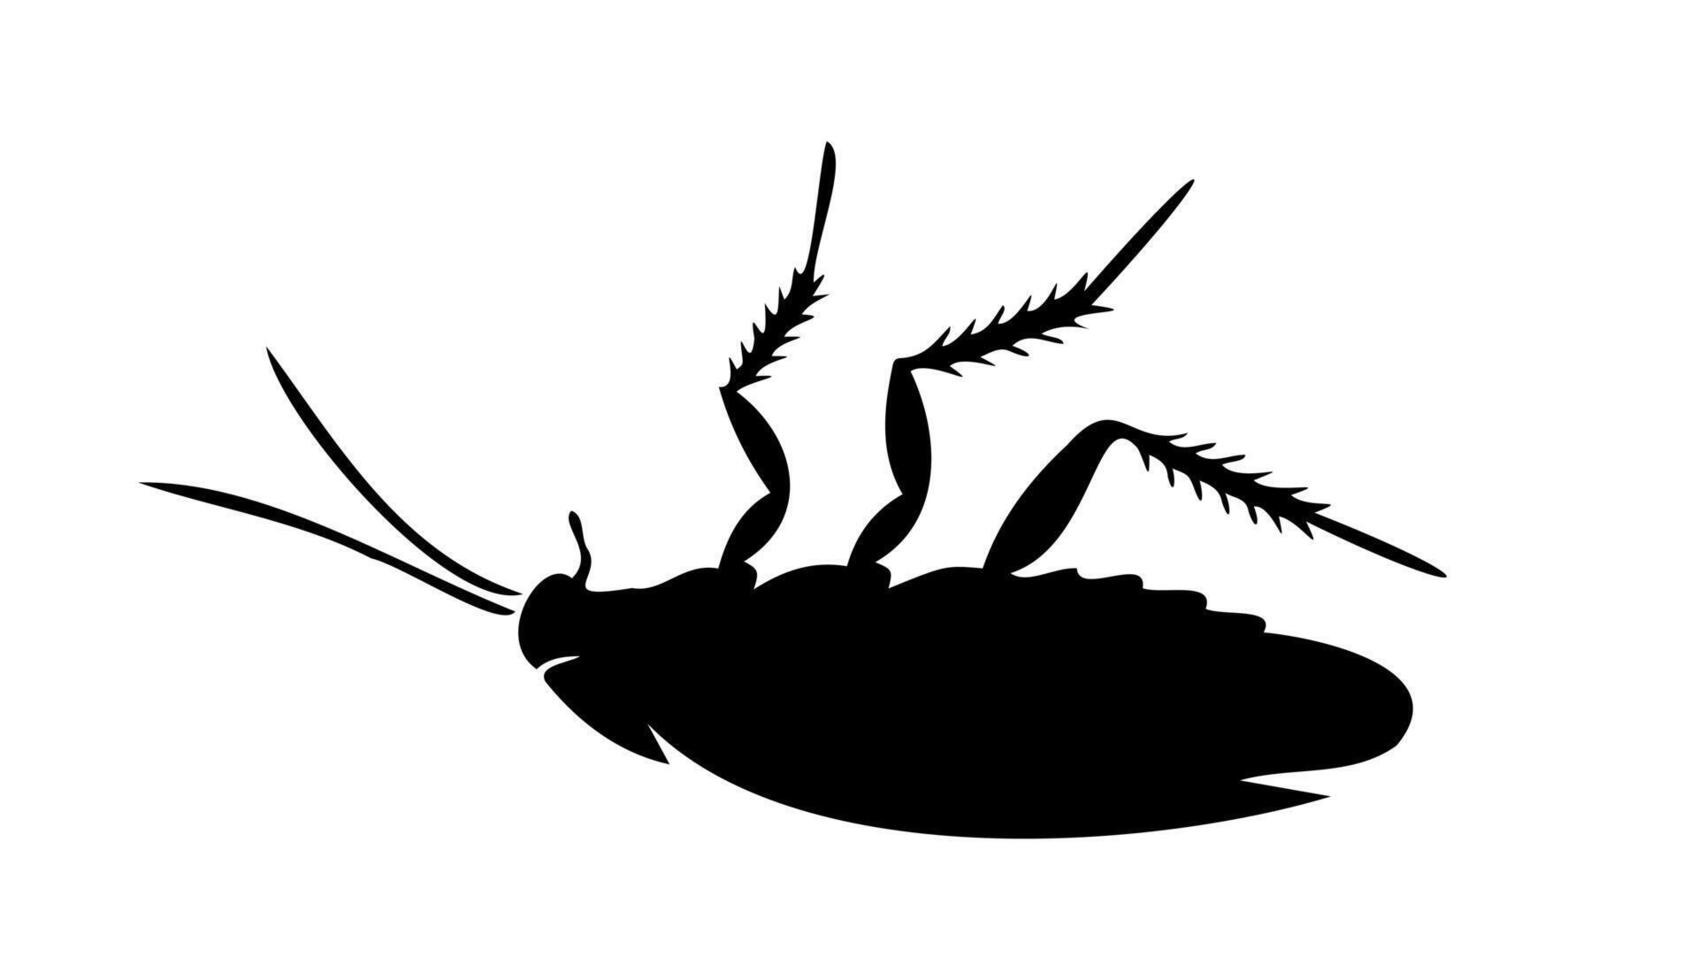 svart silhuett av död- kackerlacka liggande på dess tillbaka på vit bakgrund. illustration. Bra för skadedjur kontrollera service annonser, hygien pedagogisk innehåll, produkt etiketter för insekticider. vektor